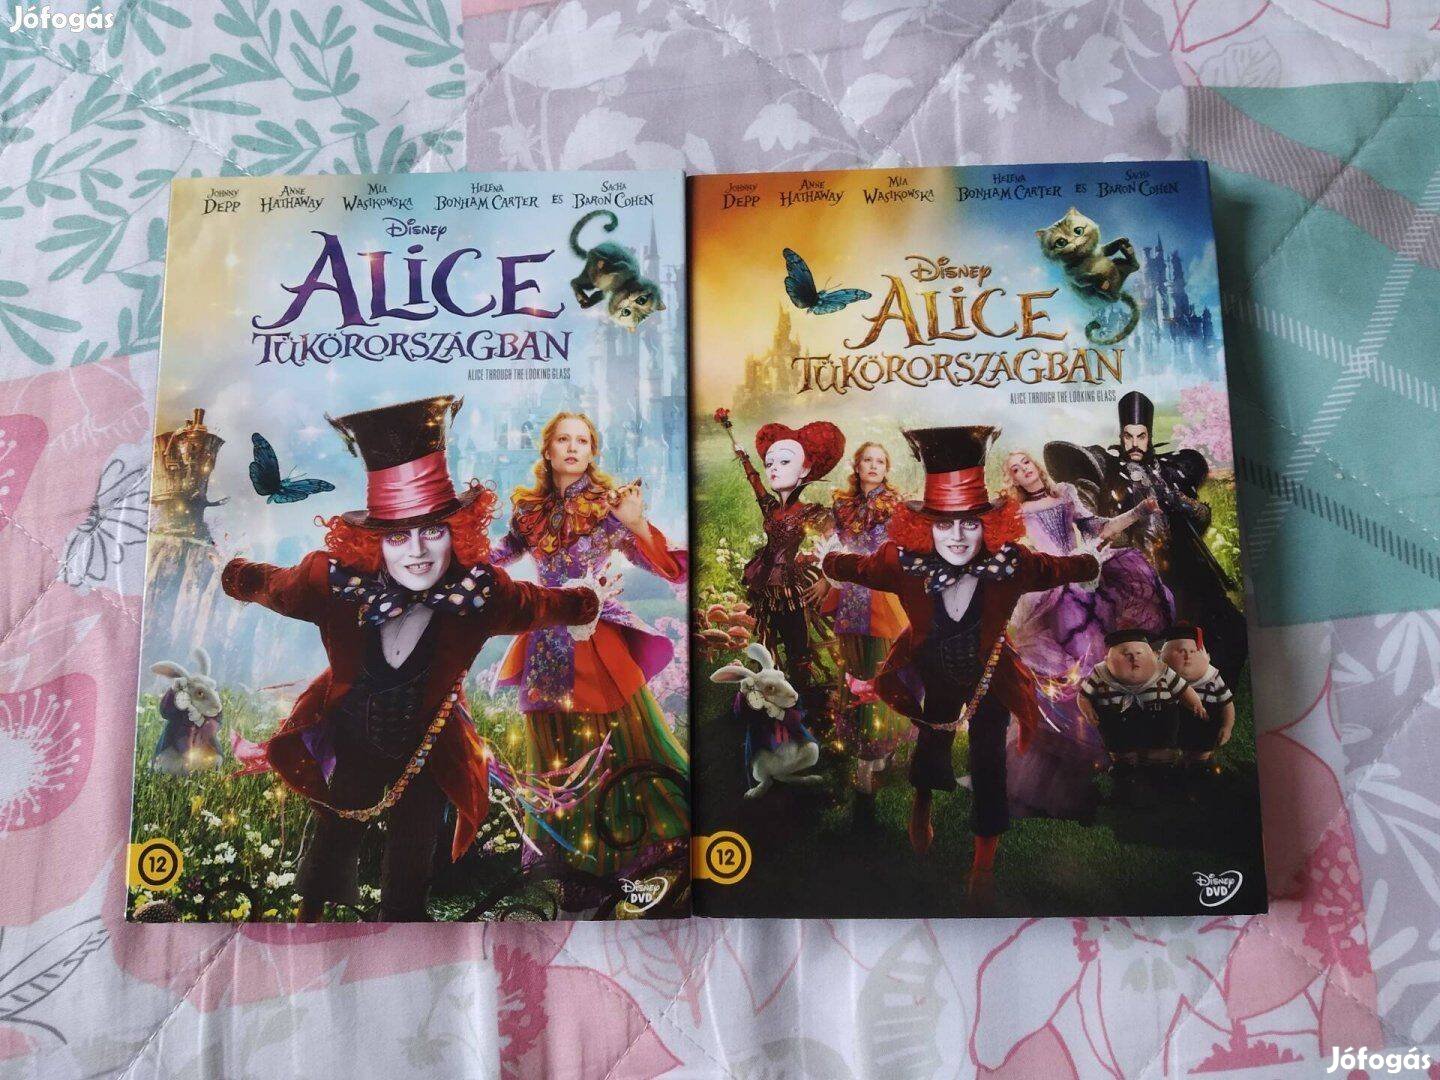 Alice Tükörországban dvd-k